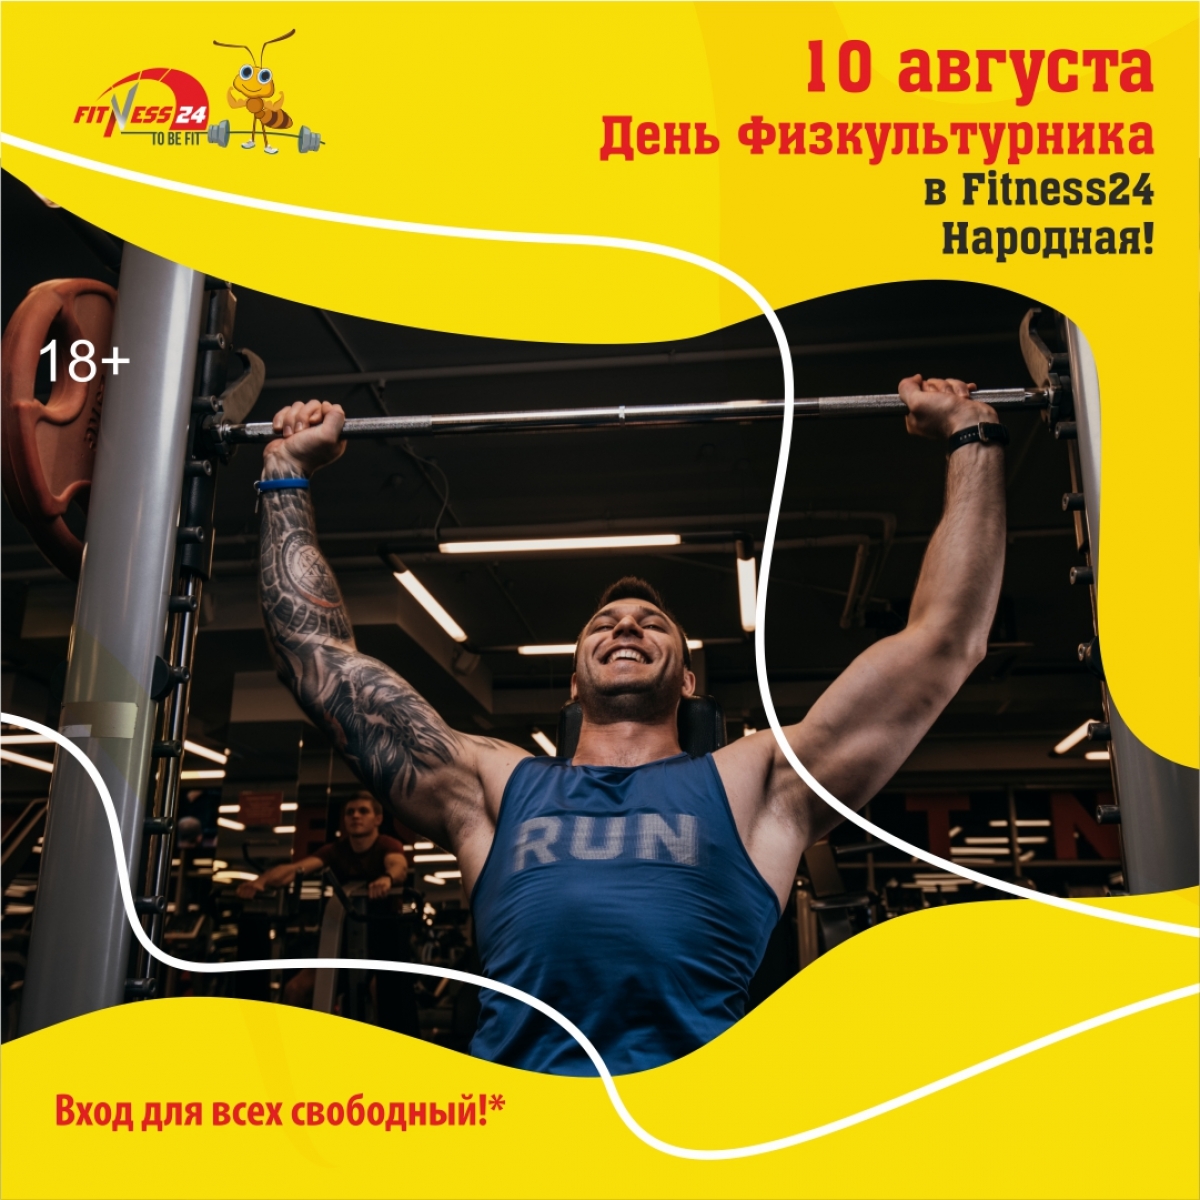 10 августа - День Физкультурника в Fitness24 Народная!